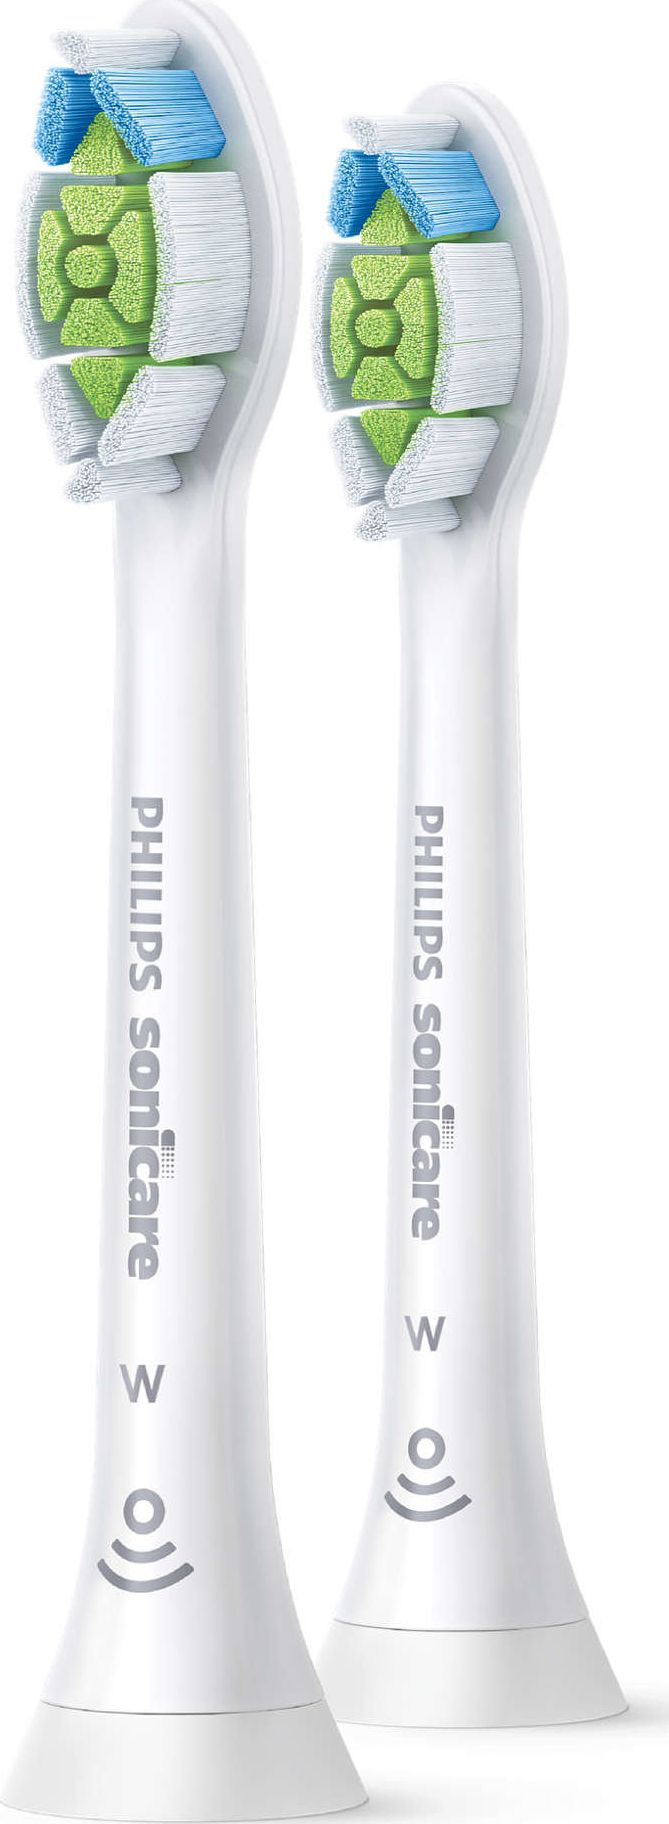 Rezerve periuta de dinti electrica Philips Sonicare W Optimal White HX6062/10, 2 buc, standard, Alb